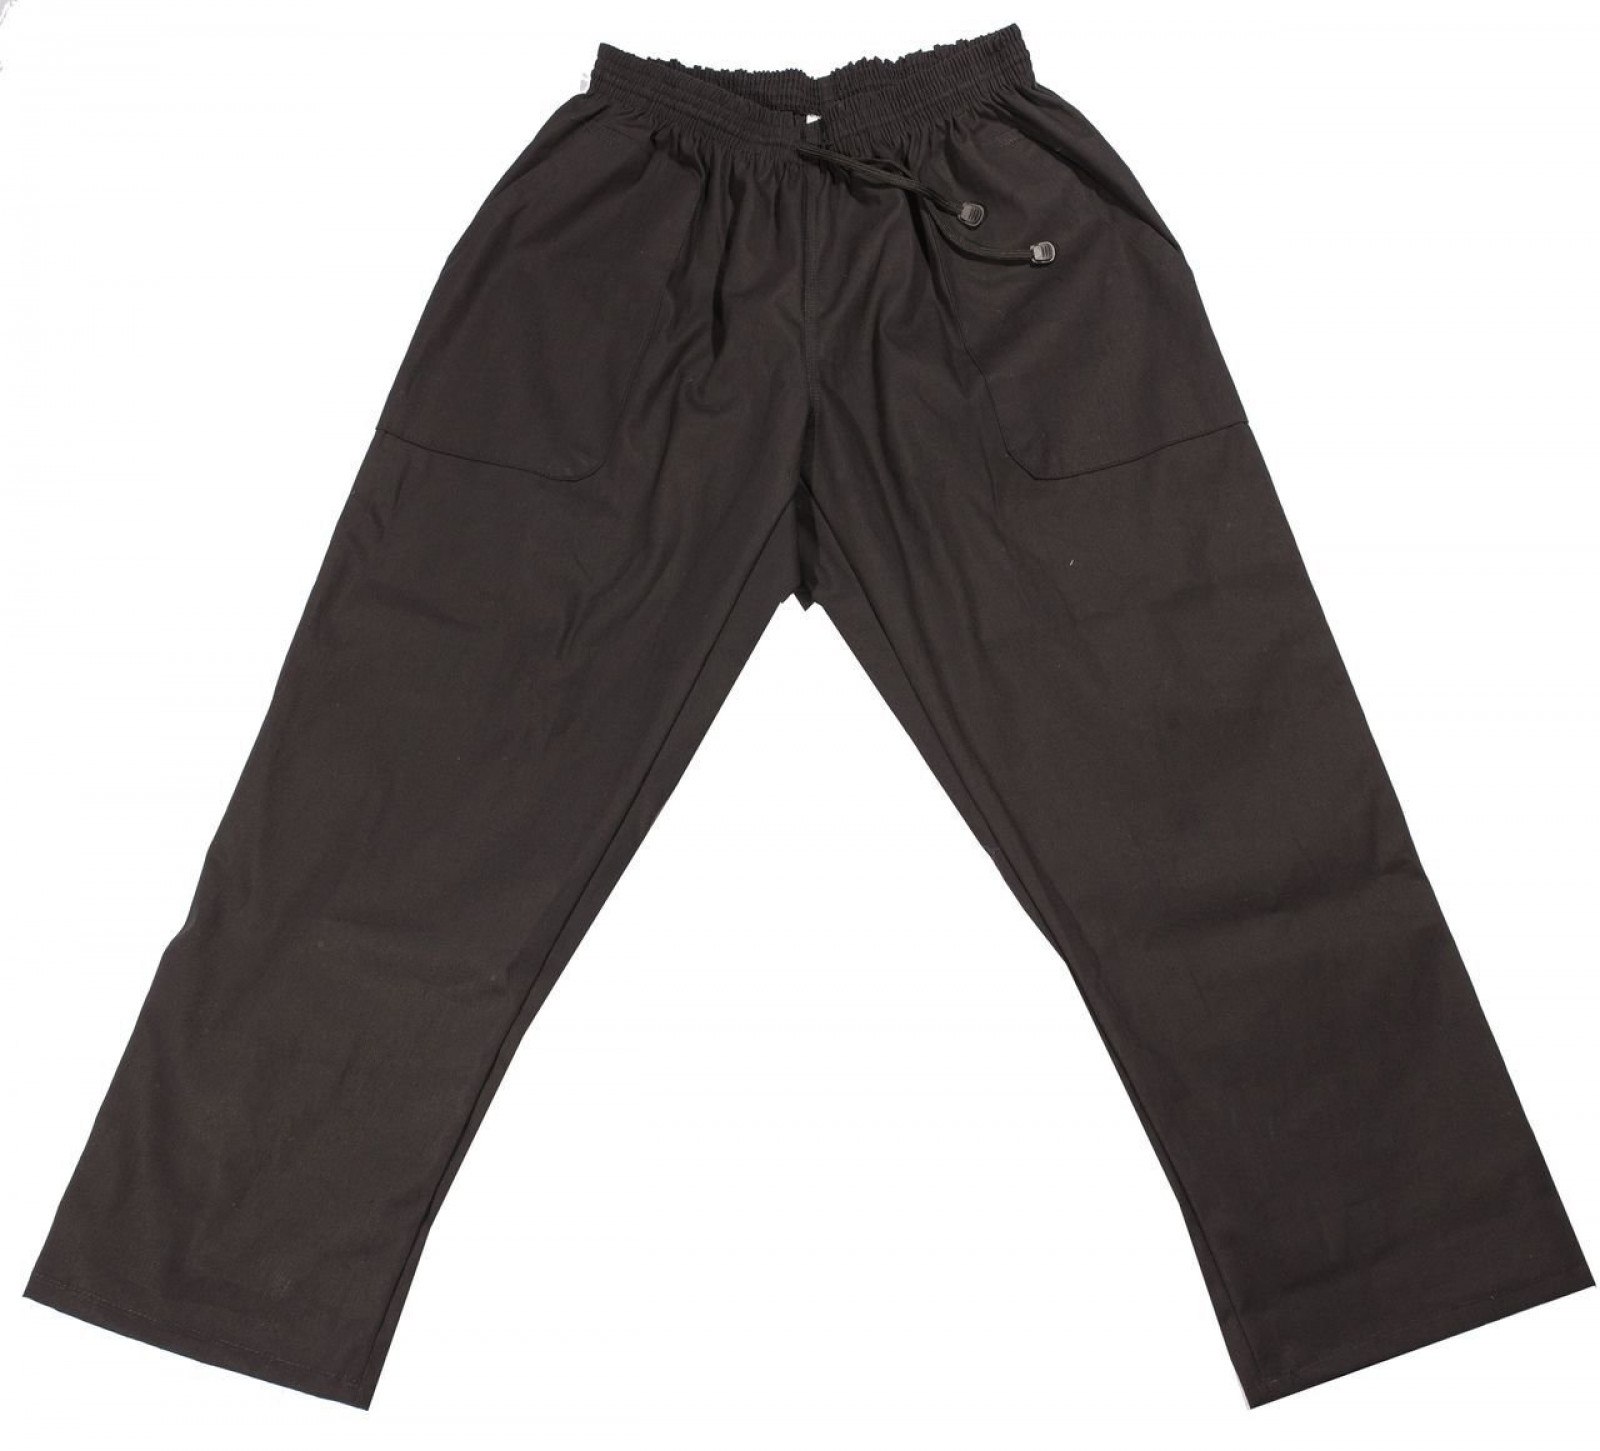 Купить штаны мужские большого размера. UD 5027 (BSD 002) брюки (152-164см). Tello JNS брюки мужские. Брюки детские tg0517/Anthracite. Черные штаны.